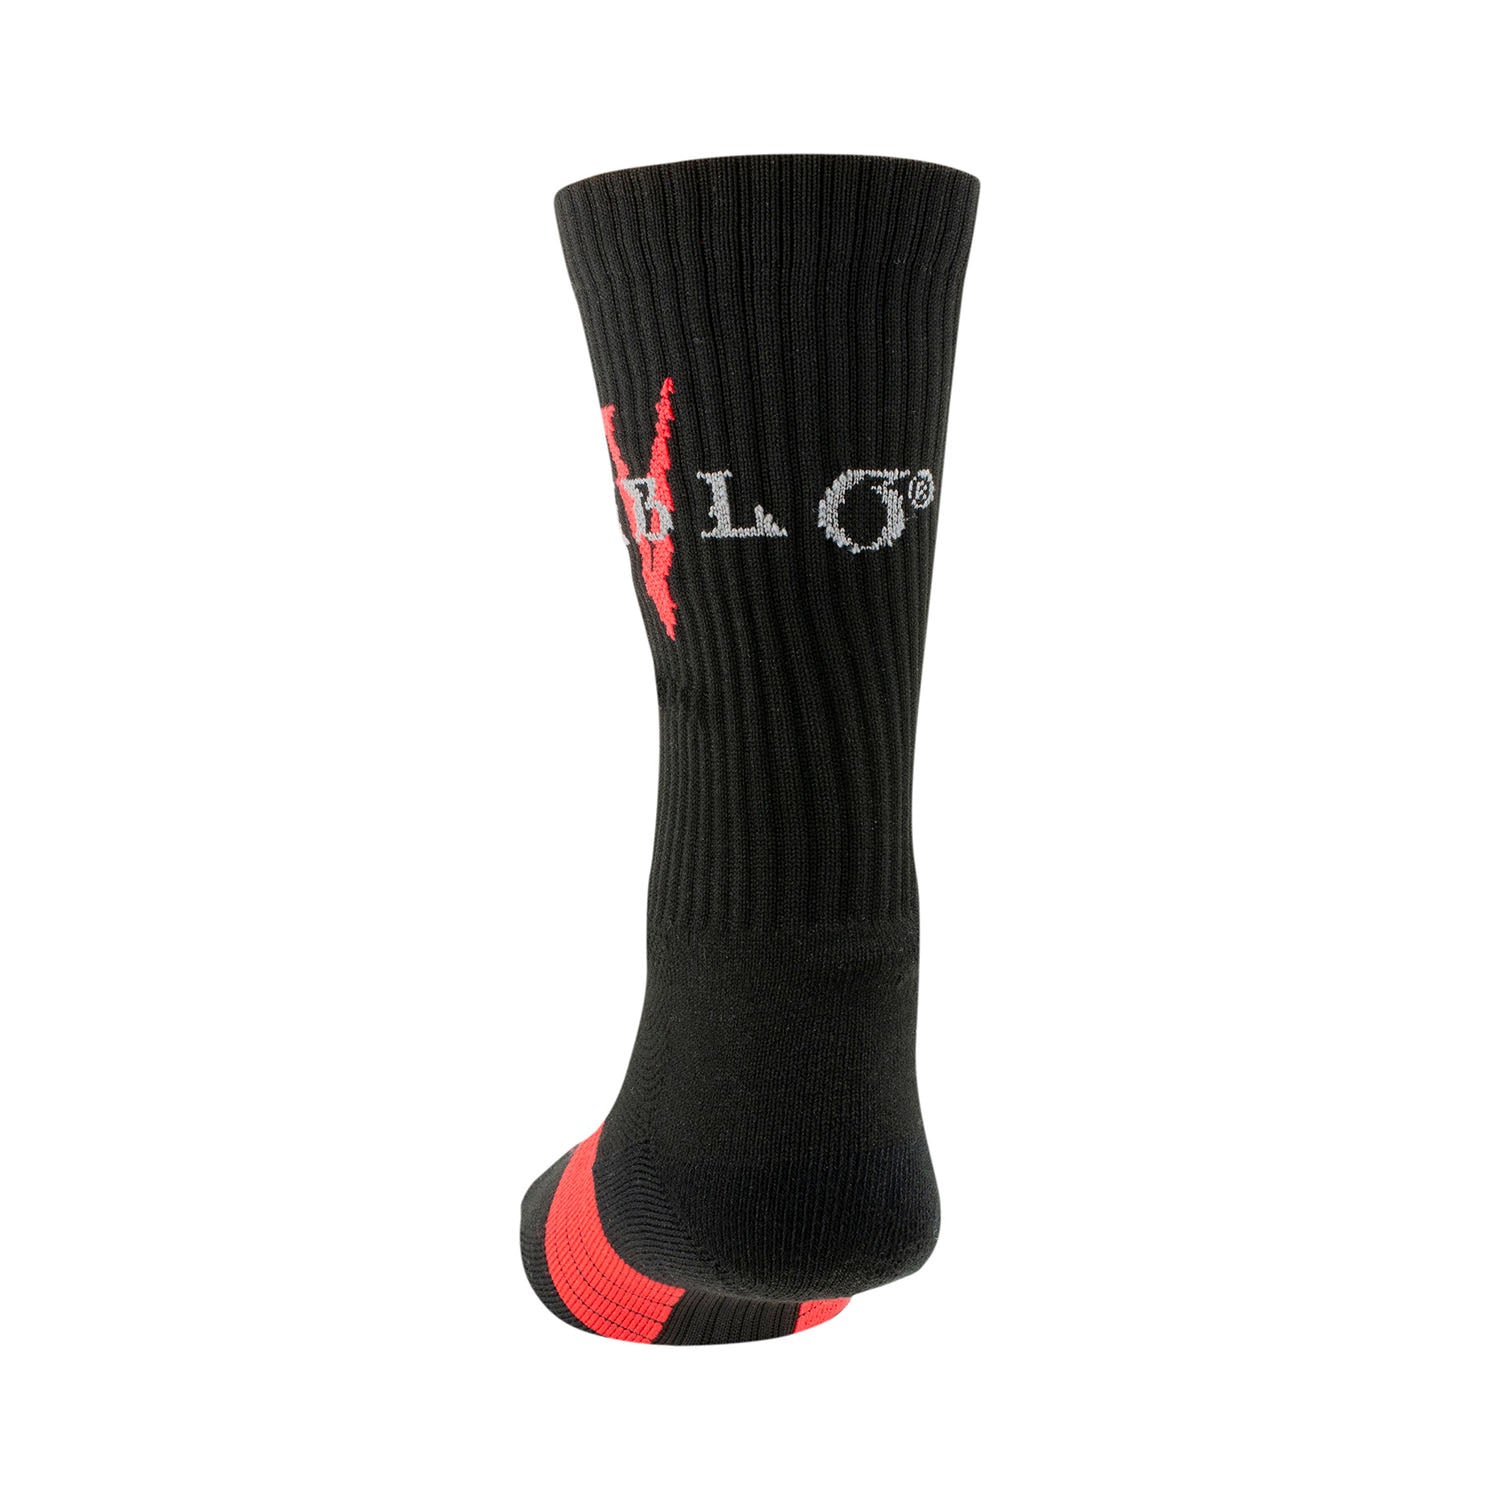 Diablo IV Logo Socks in Black - Back View